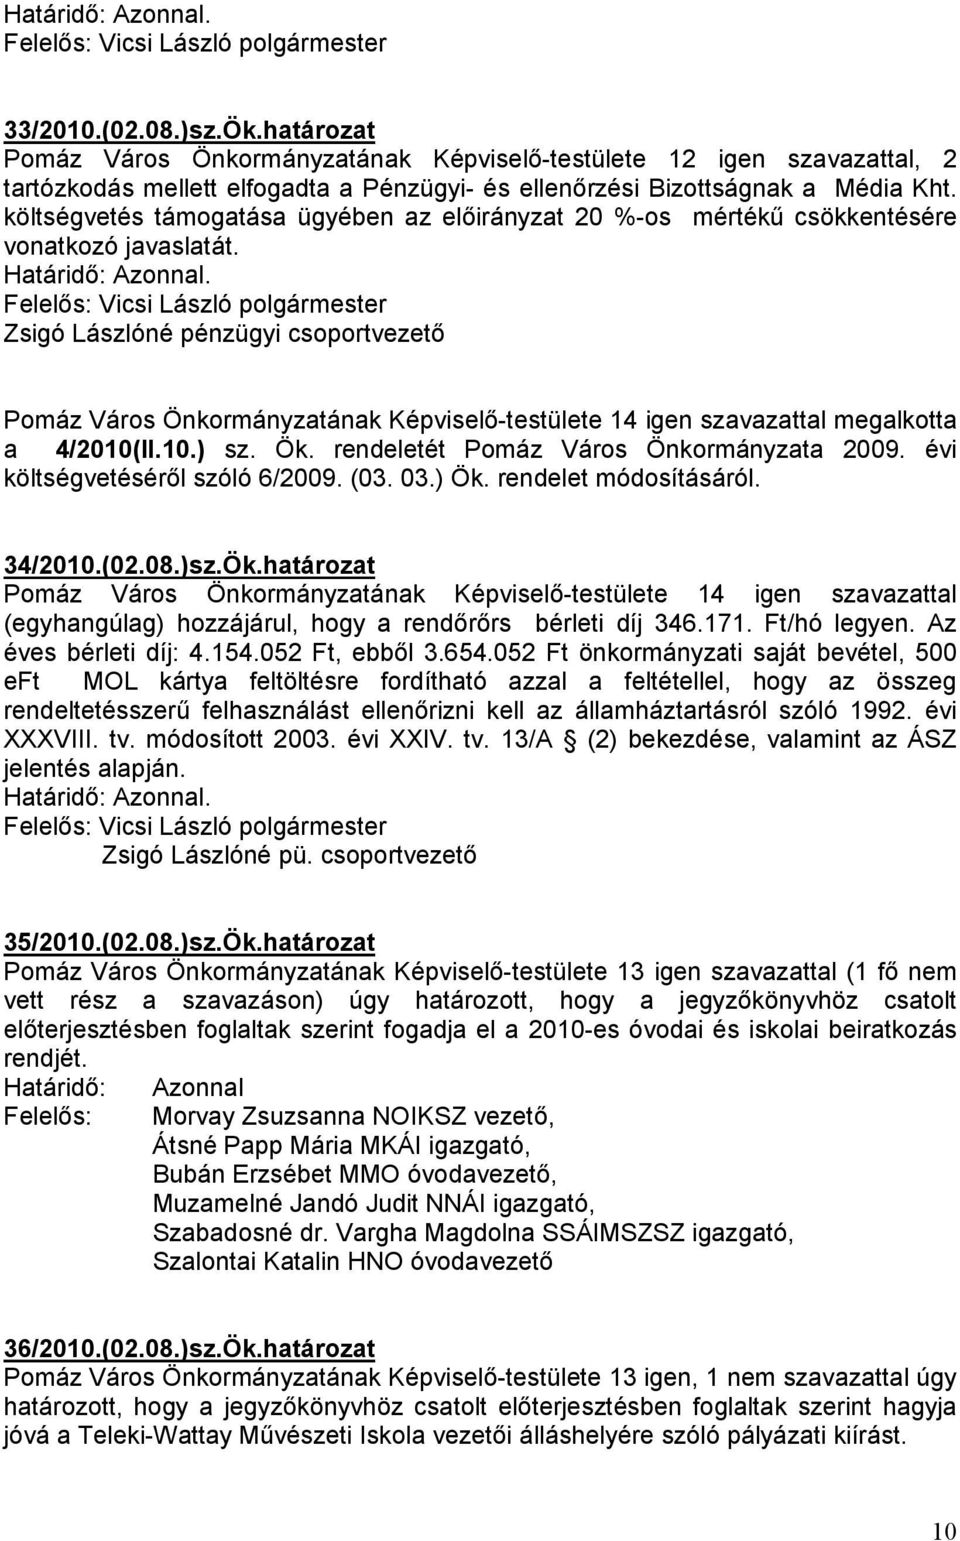 Zsigó Lászlóné pénzügyi csoportvezetı Pomáz Város Önkormányzatának Képviselı-testülete 14 igen szavazattal megalkotta a 4/2010(II.10.) sz. Ök. rendeletét Pomáz Város Önkormányzata 2009.